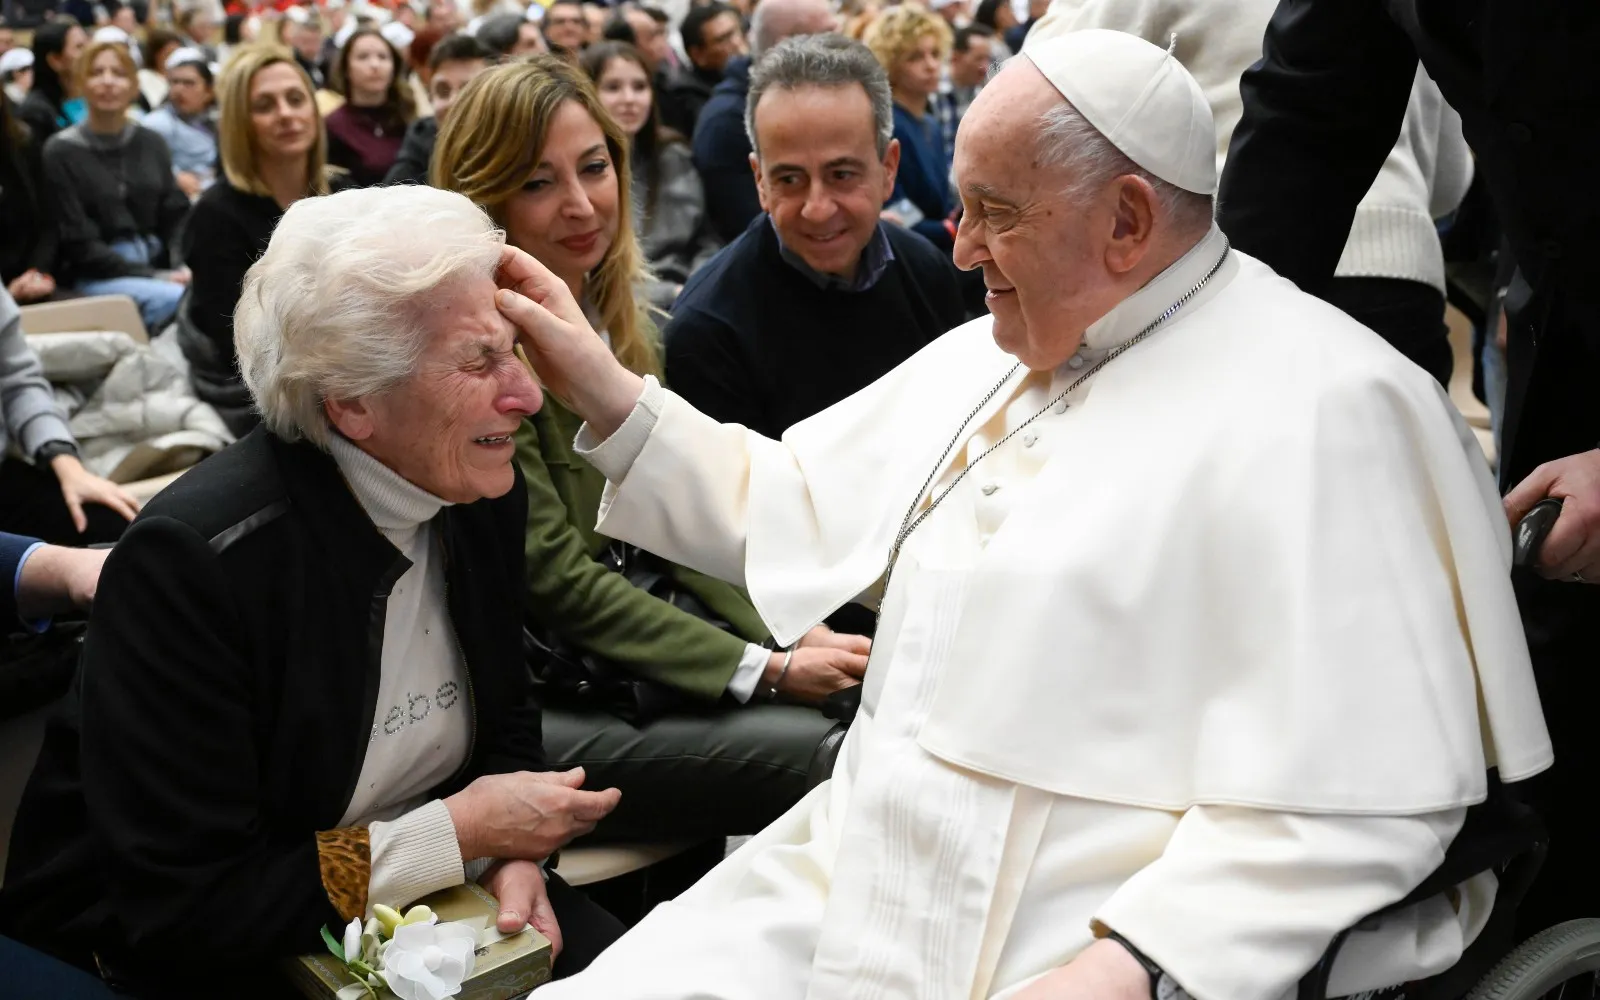 El Papa Francisco saluda a una anciana tras la Audiencia General?w=200&h=150